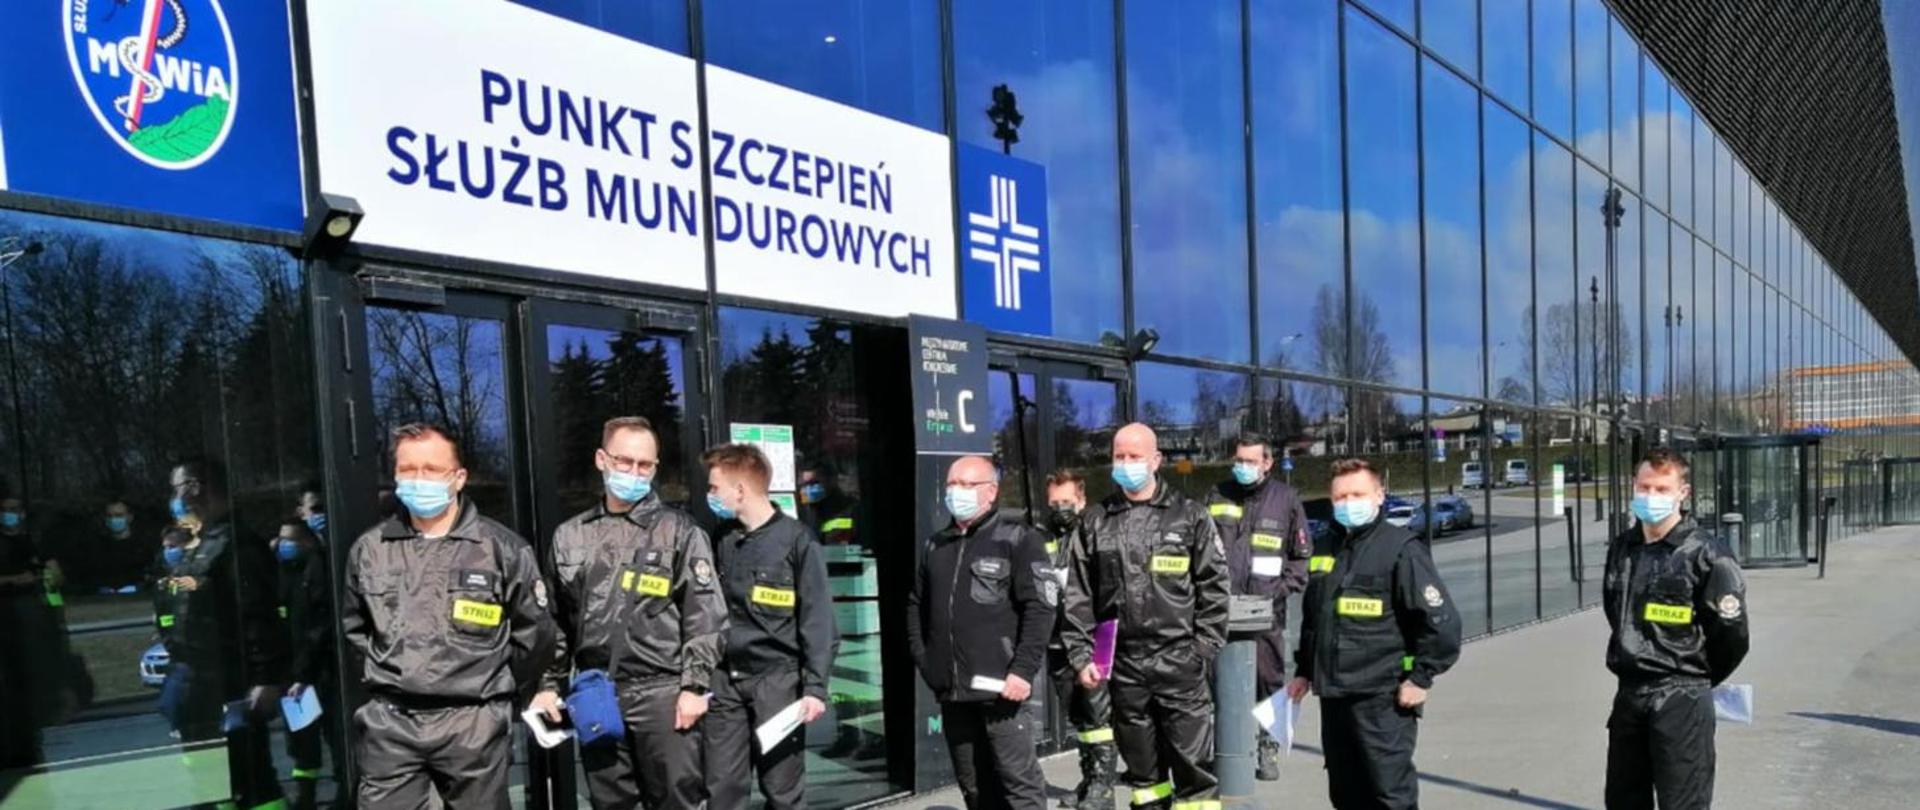 Zdjęcie przedstawia 9 strażaków ubranych w ubraniu koszarowym stojących przed drzwiami budynku MCK w Katowicach w kolejce do szczepienia. Nad drzwiami widnieje napis Punkt Szczepień Służb Mundurowych.